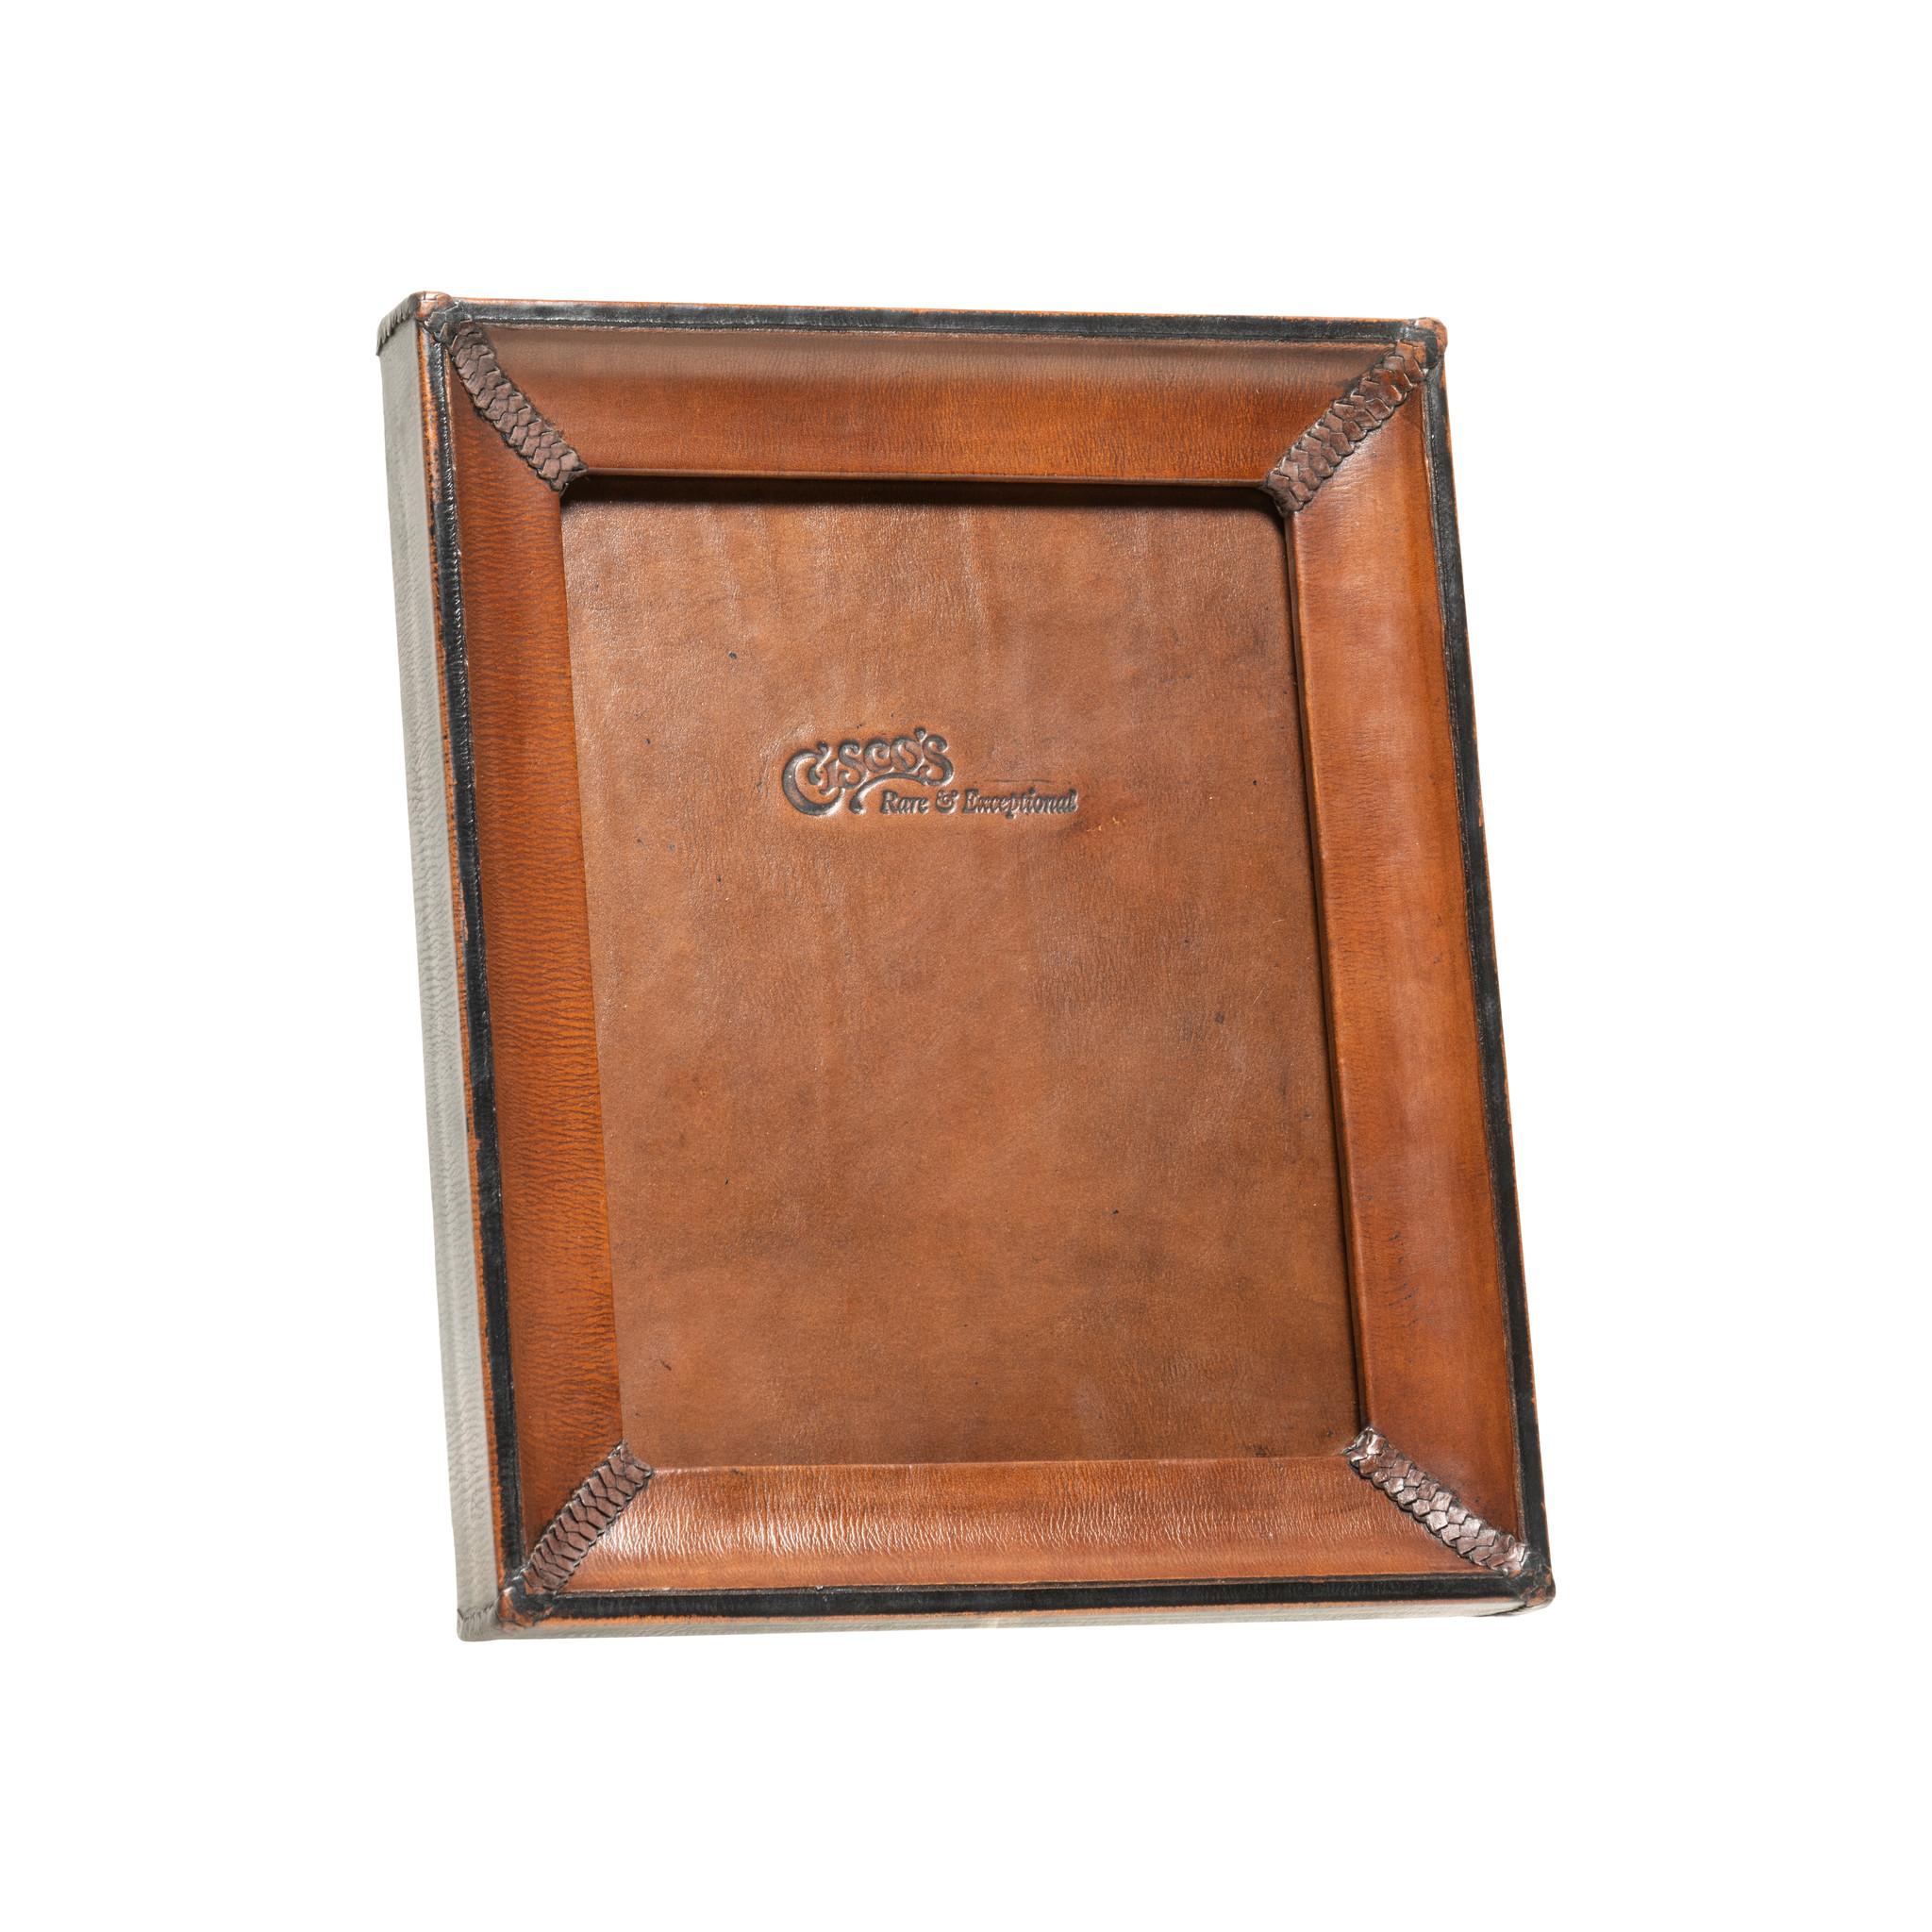 Cadre photo de table 5x7 en cuir brun et noir. Les cadres photo en cuir de qualité supérieure de Cisco sont l'accessoire idéal pour la maison ou le bureau. Chaque armature est habilement fabriquée par des artisans selliers qui utilisent du cuir de